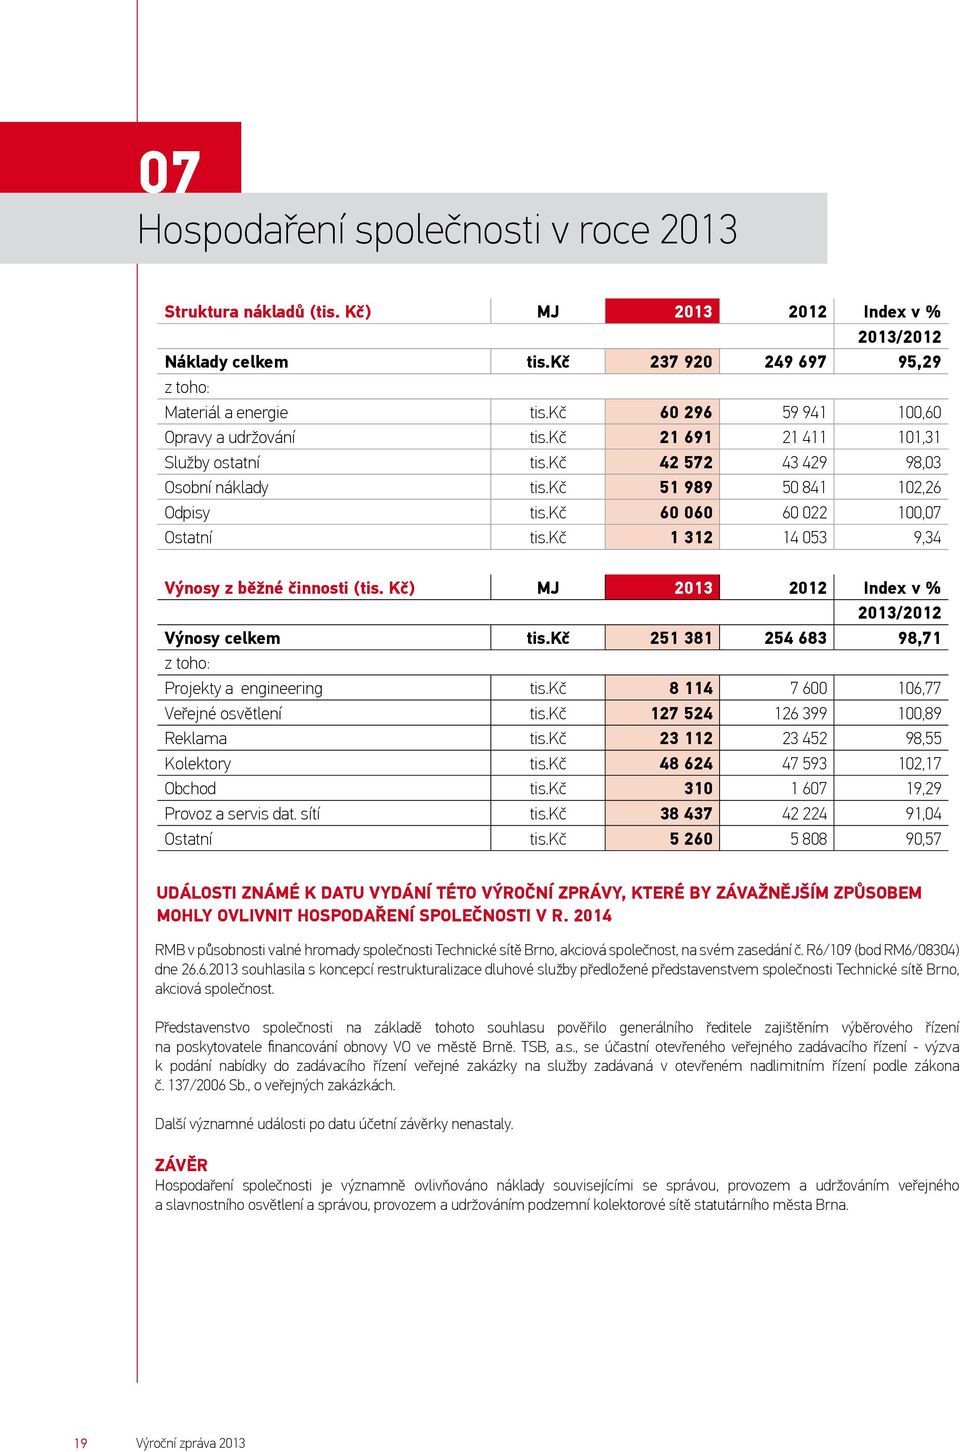 kč 60 060 60 022 100,07 Ostatní tis.kč 1 312 14 053 9,34 Výnosy z běžné činnosti (tis. Kč) MJ 2013 2012 Index v % 2013/2012 Výnosy celkem tis.